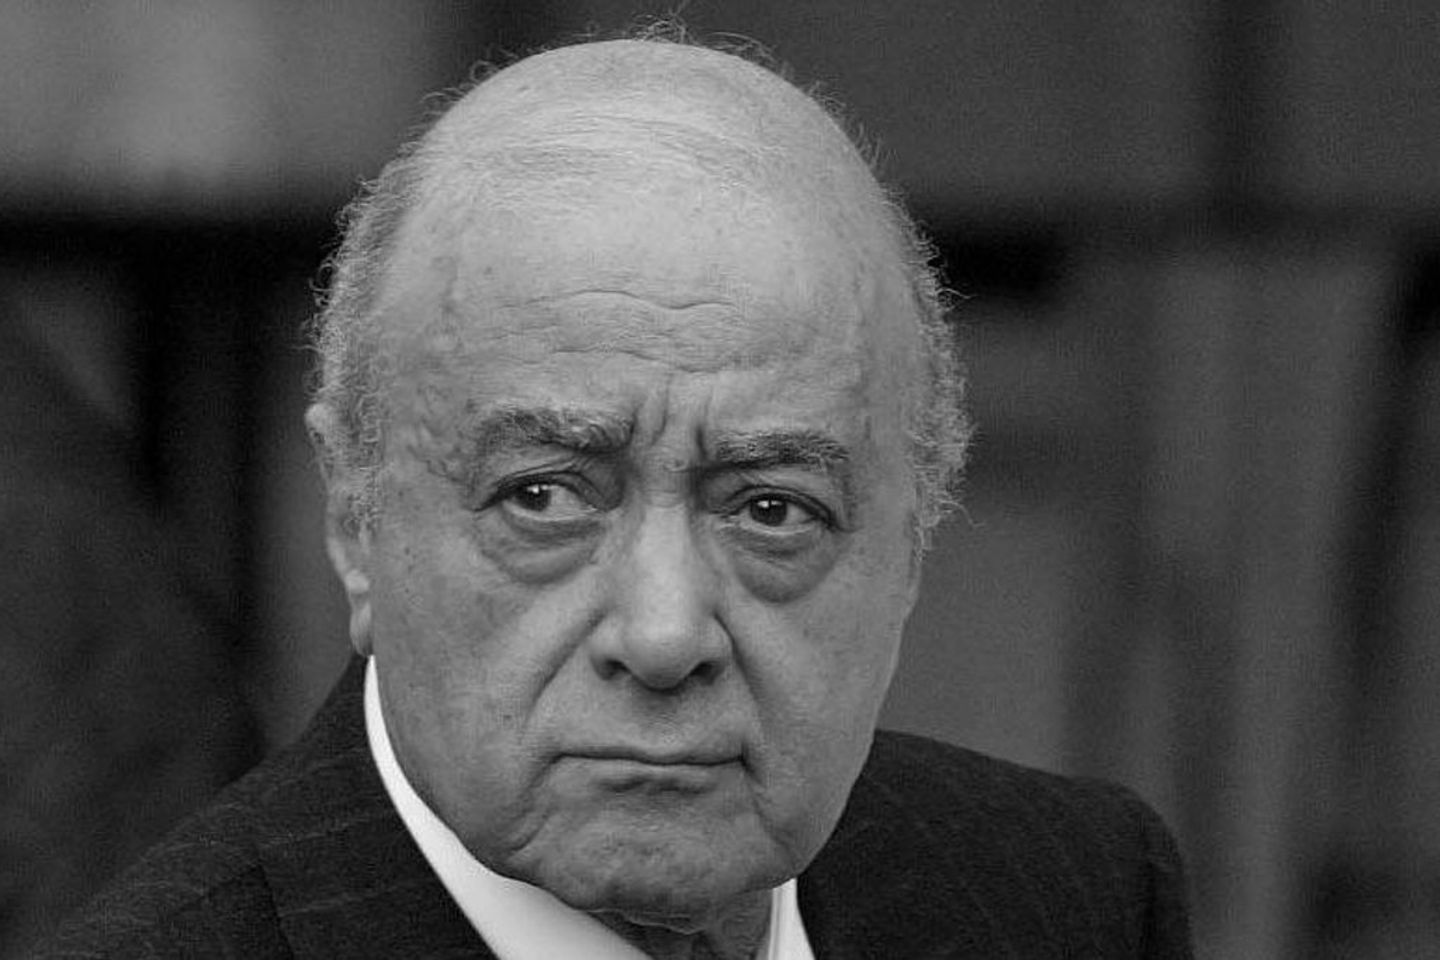 Mohamed Al-Fayed ist im Alter von 94 Jahren verstorben.